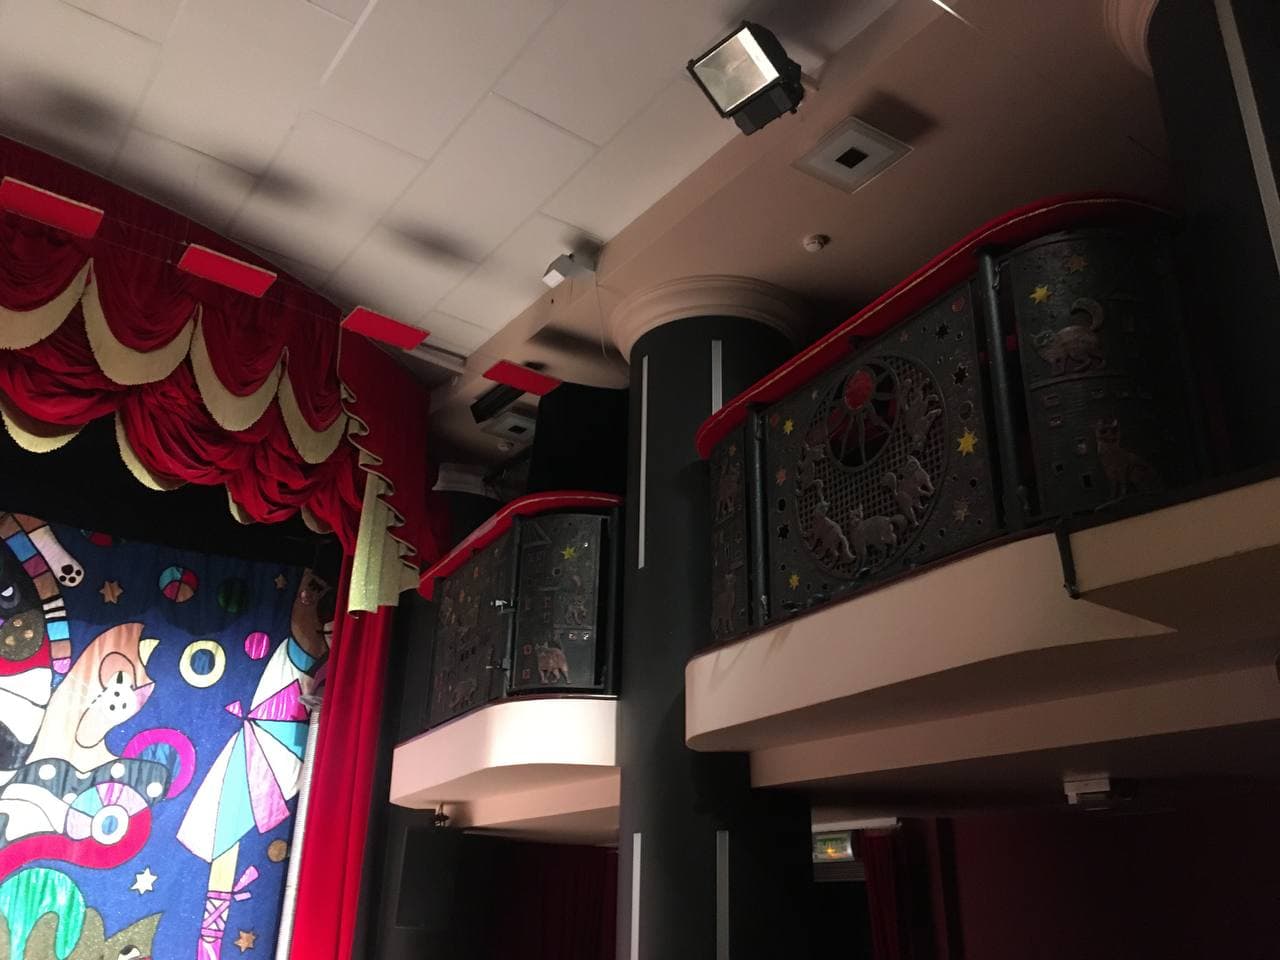 театр кошек куклачева зала